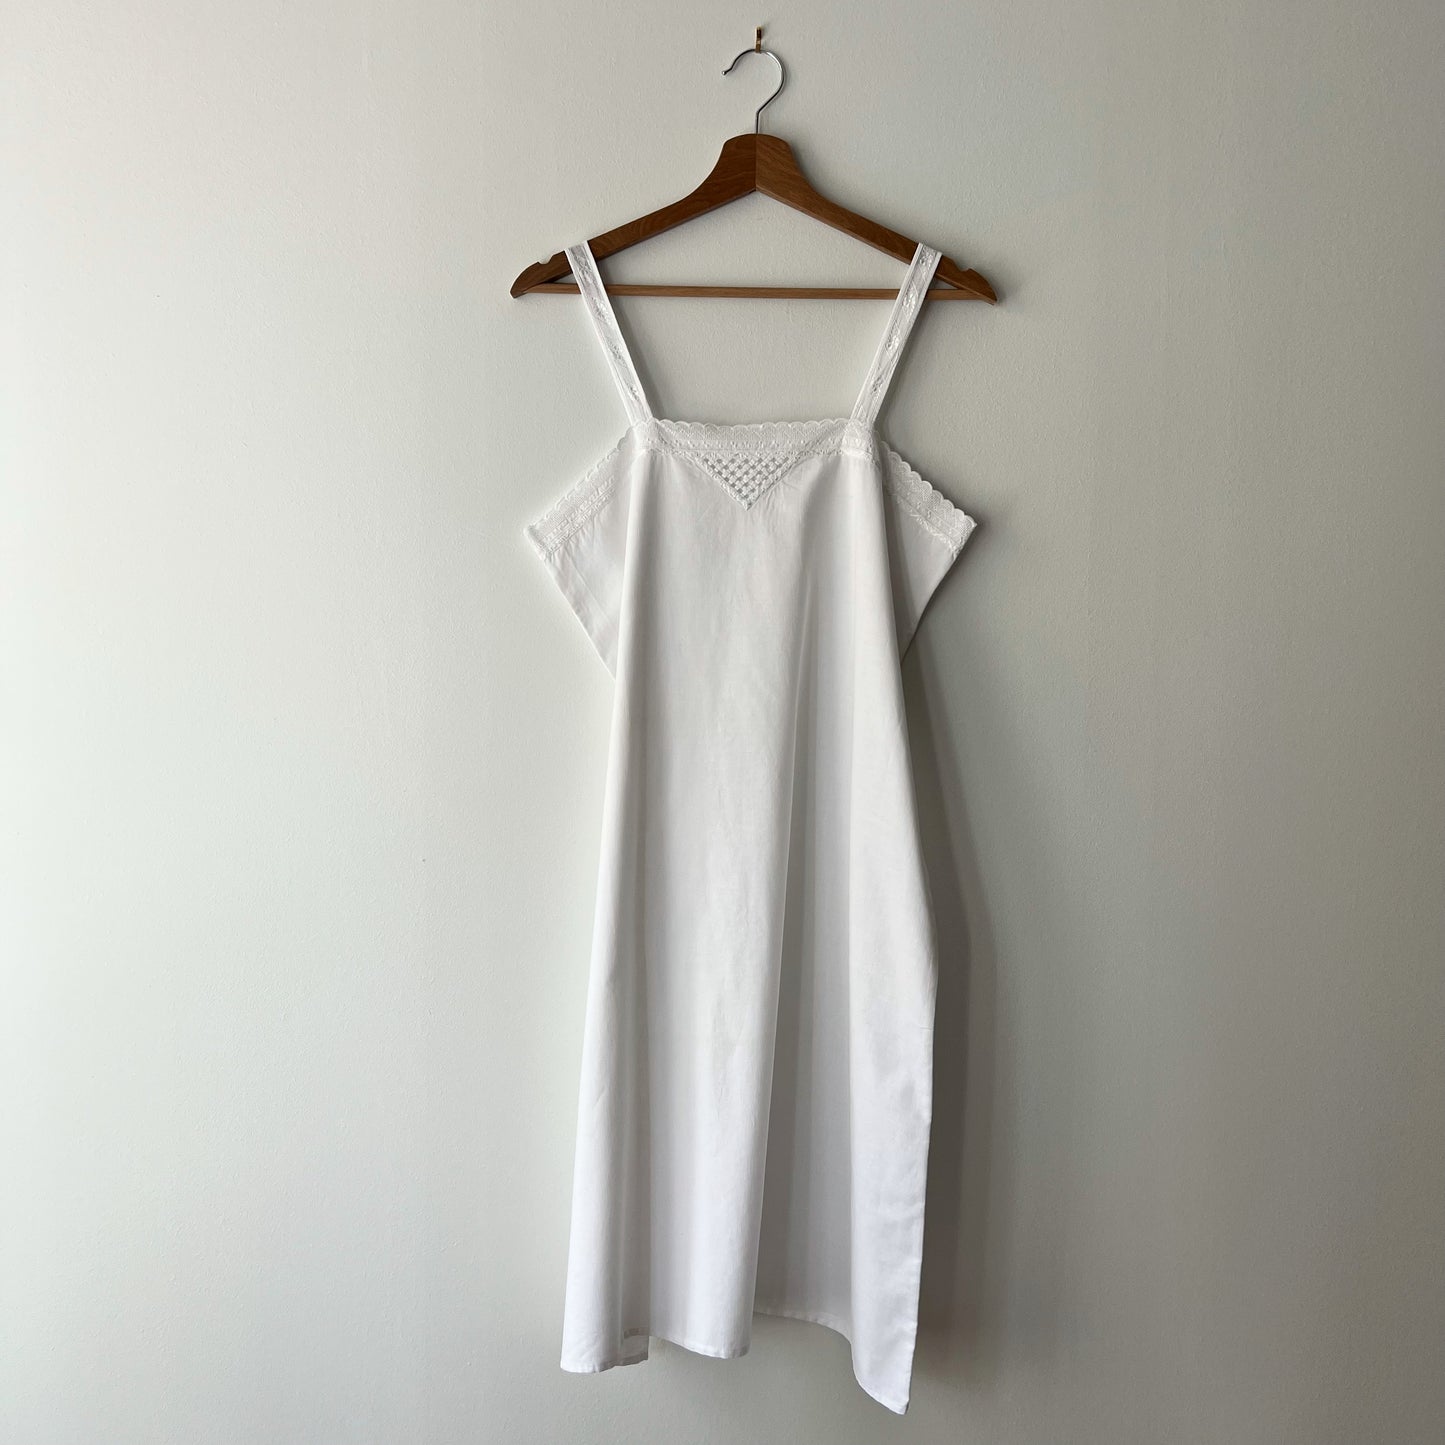 【Vintage】France 1930s Cotton Camisole Dress